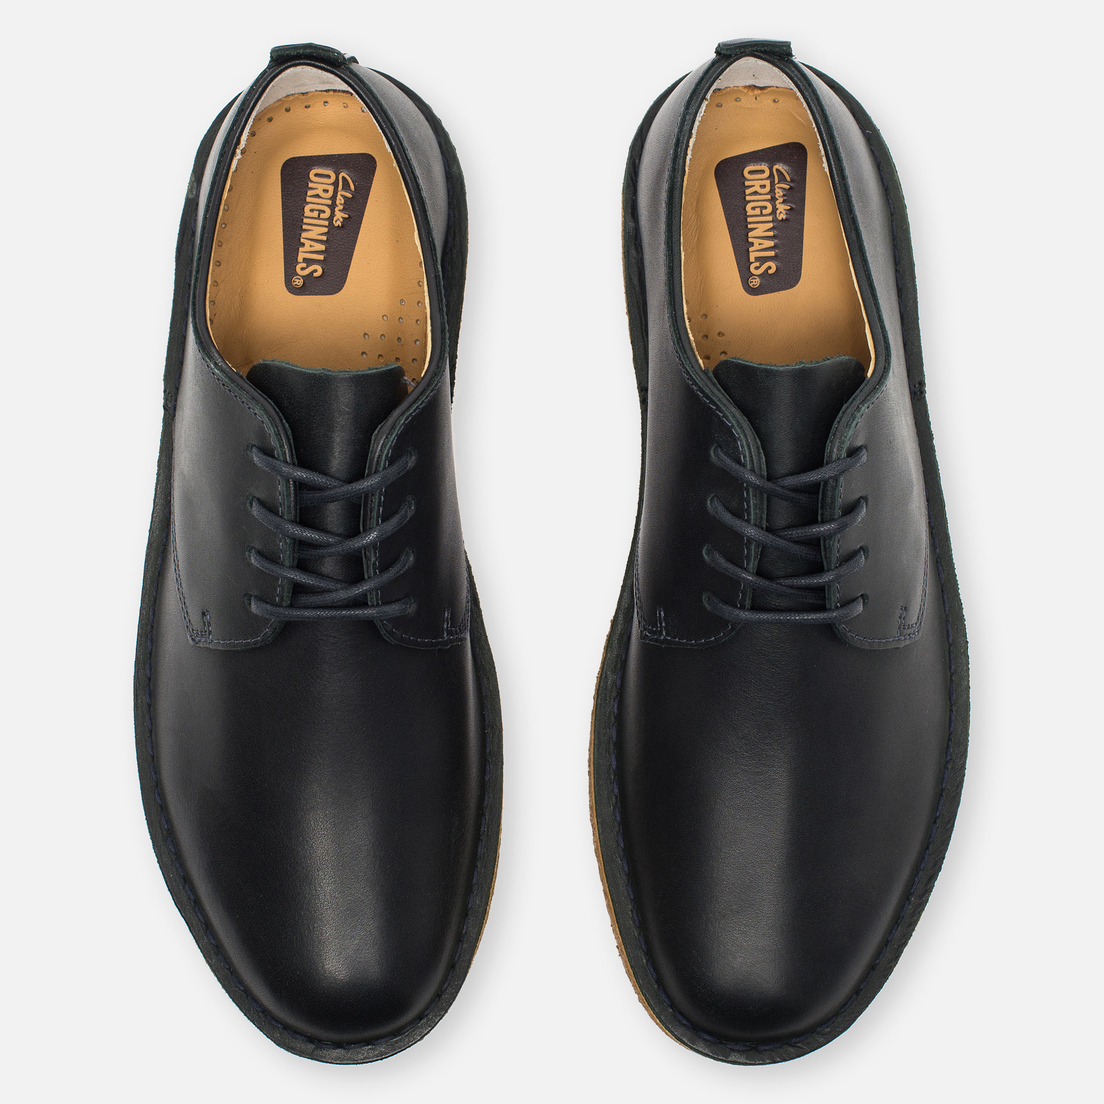 Clarks Originals Мужские ботинки Desert London Leather